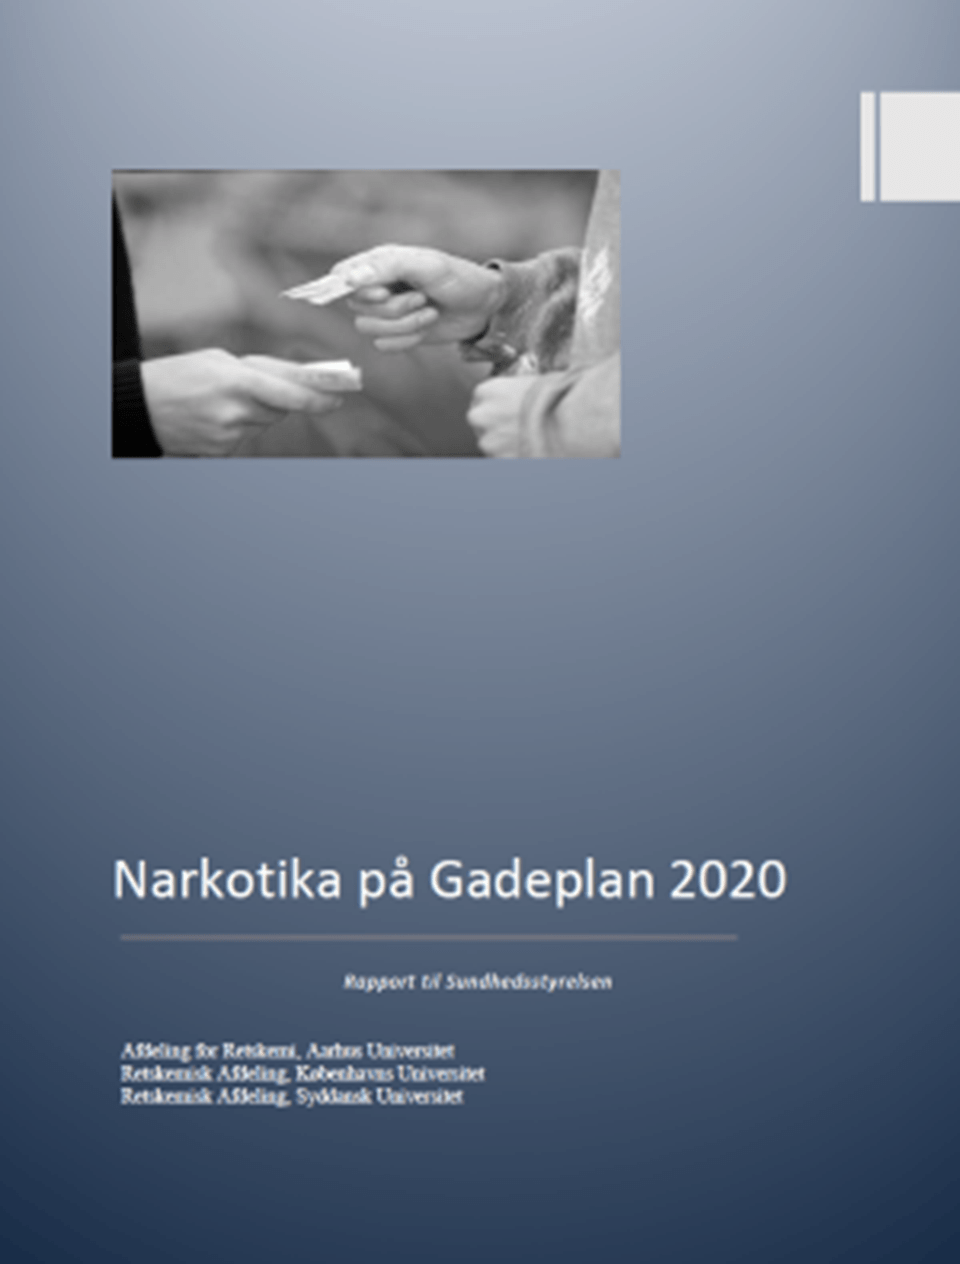 forside af rapport: Narkotika på gadeplan 2020